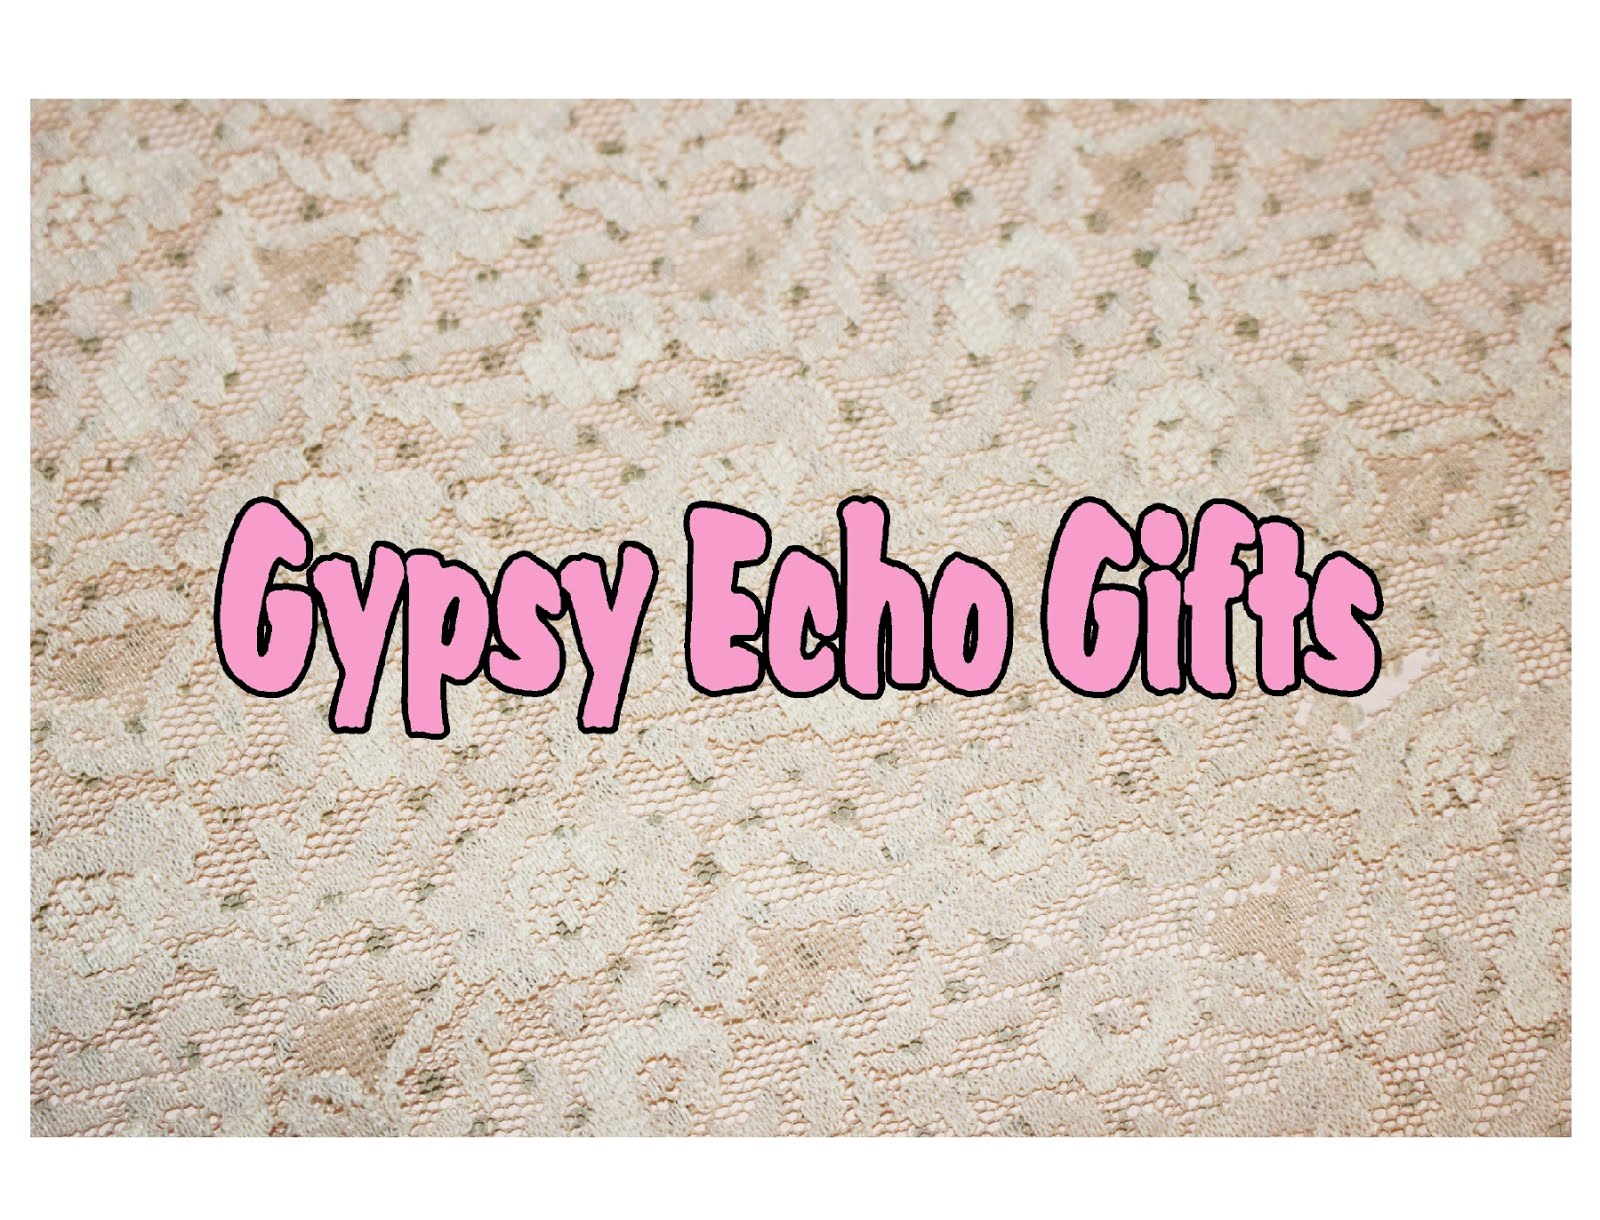 Gypsy Echo Blog